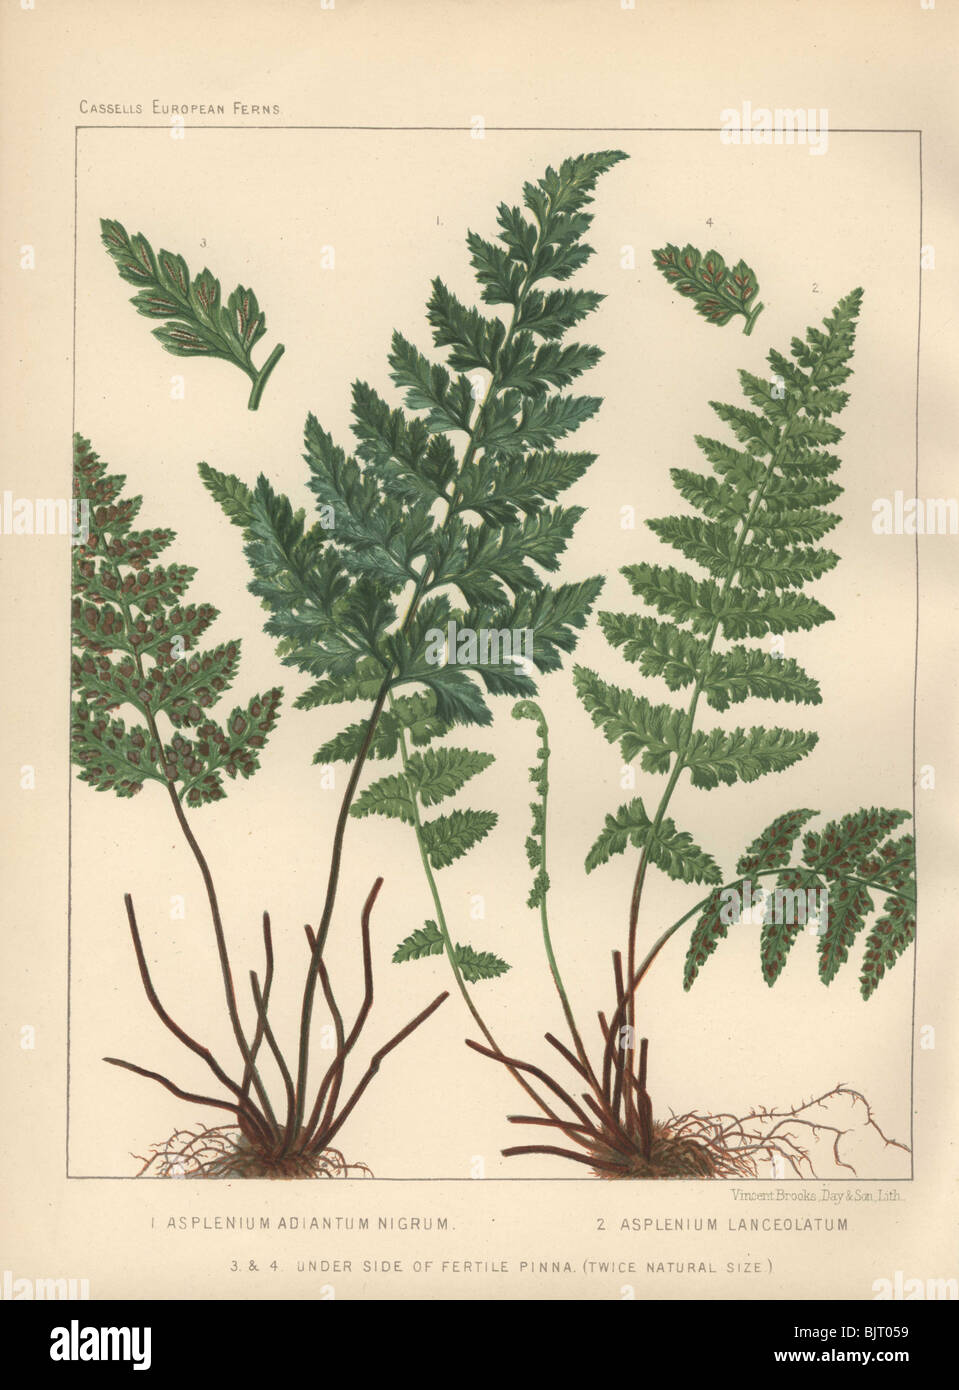 Black maidenhair fern (Asplenium adiatium-nigrum) at left, and a spleenwort fern (Asplenium lanceolatum) at right. Stock Photo